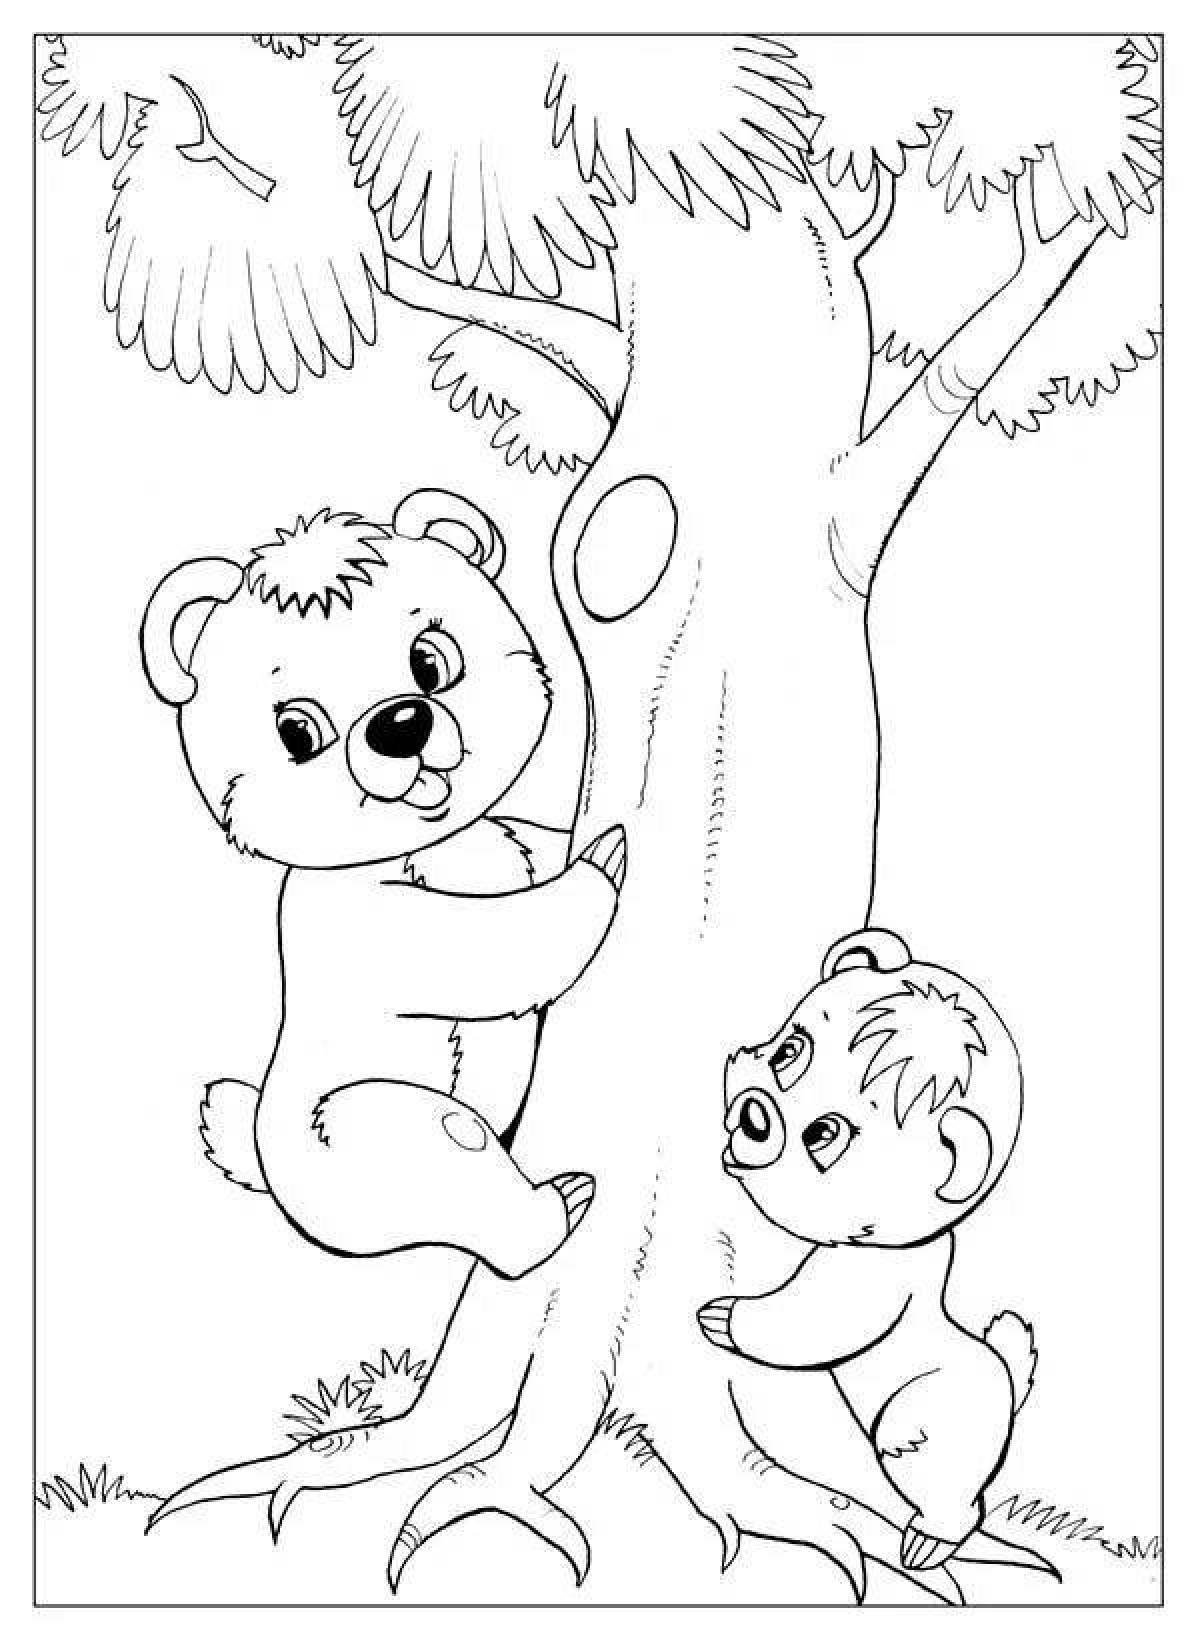 Two greedy teddy bears fun coloring book